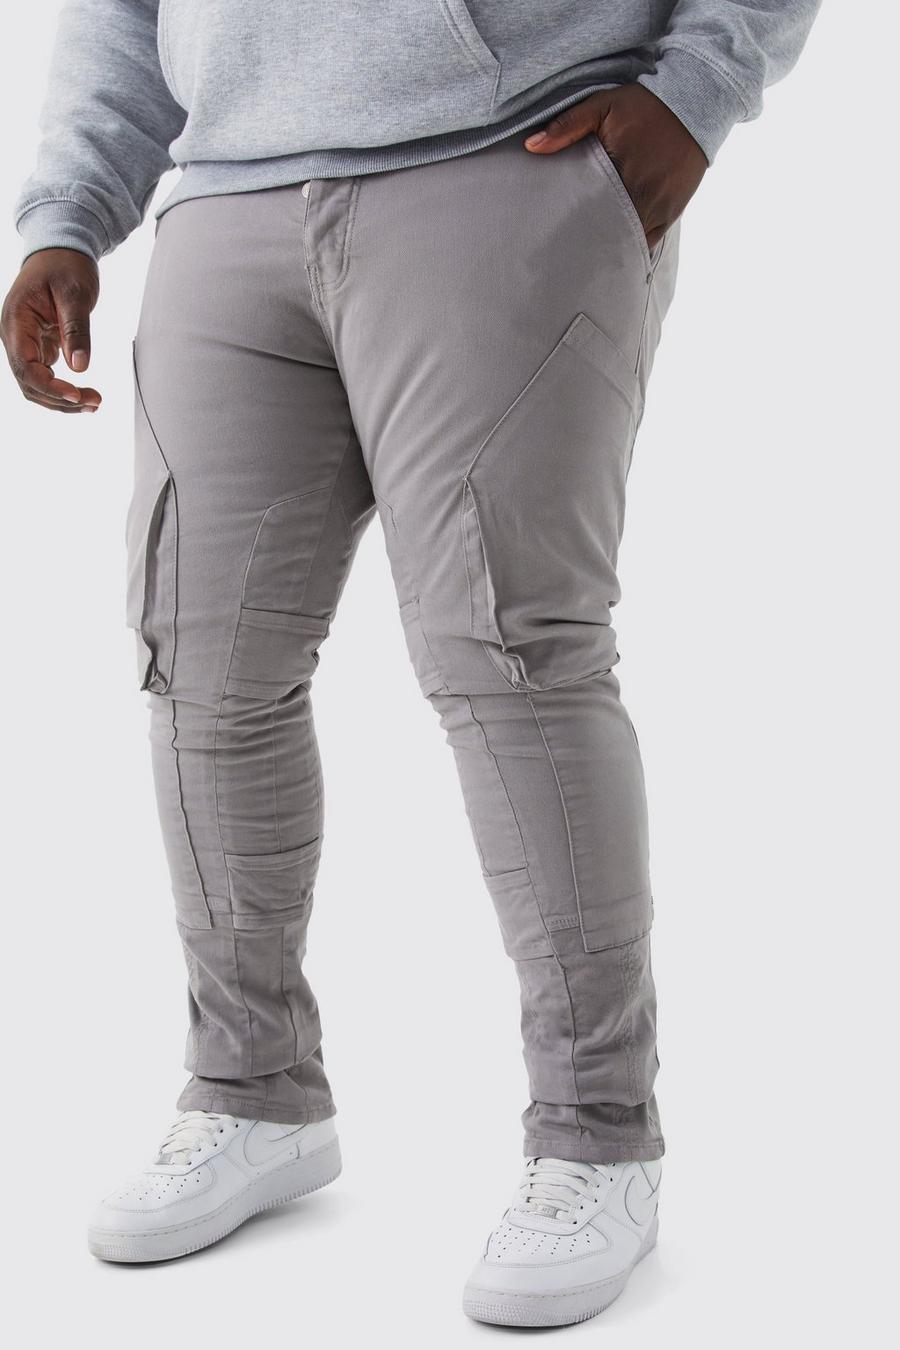 Pantaloni Cargo Plus Size a vita fissa con inserti sottili, pieghe sul fondo e spalline sottili, Dark grey